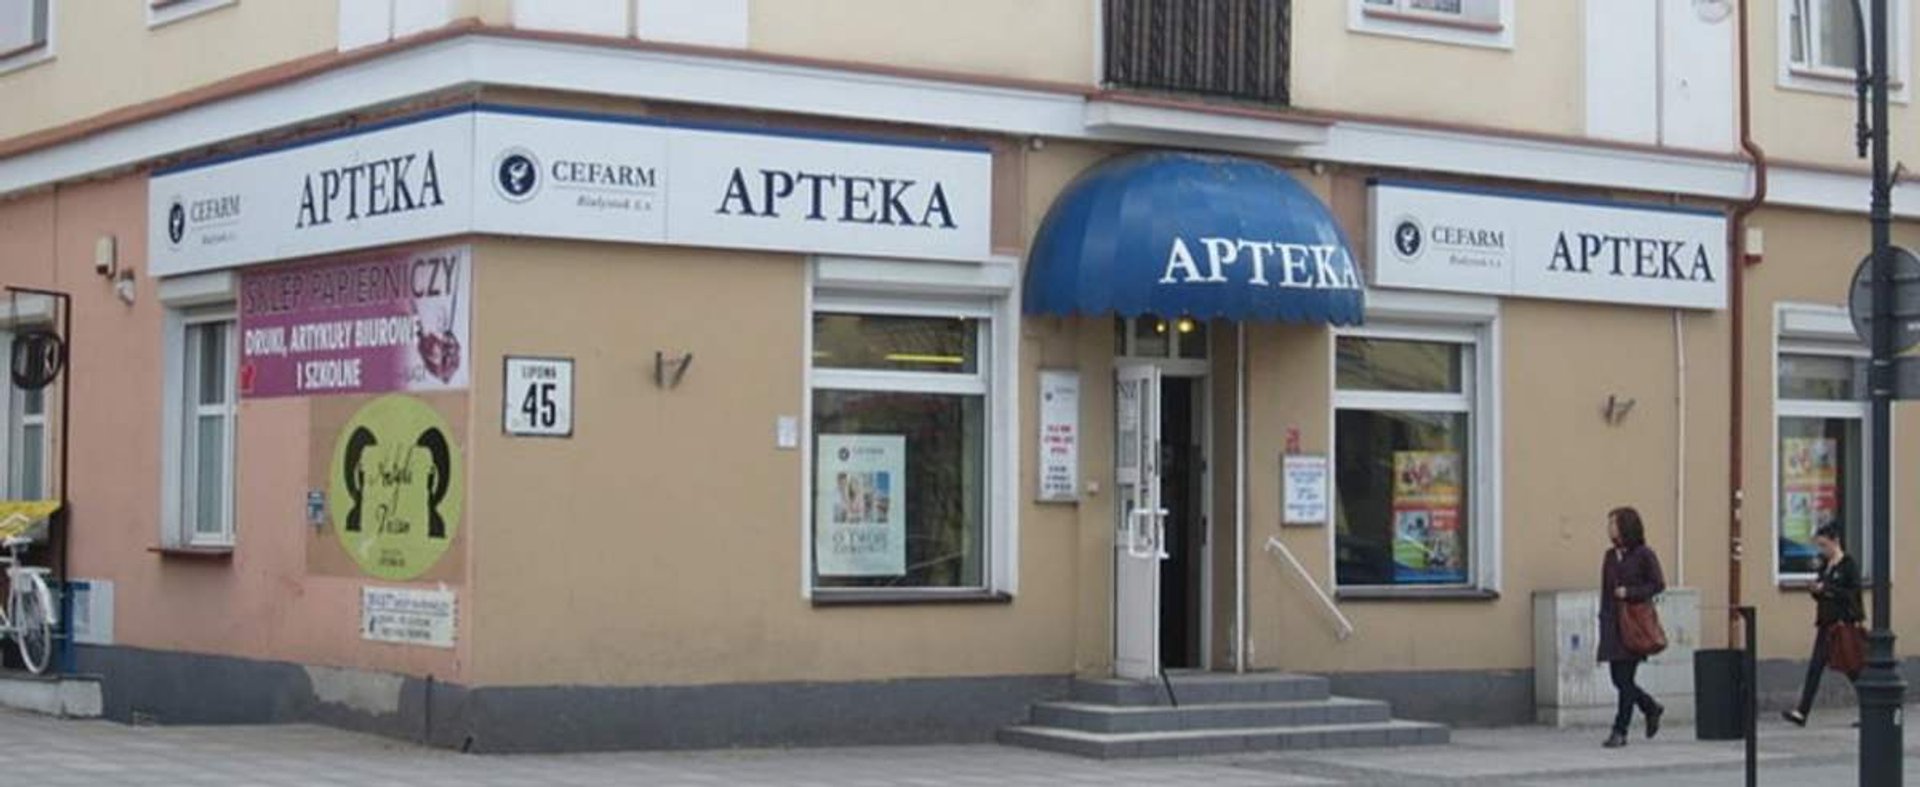 Apteka Cefarm w Białymstoku przy ul. Lipowej 45 należąca do grupy Farmacol S.A.